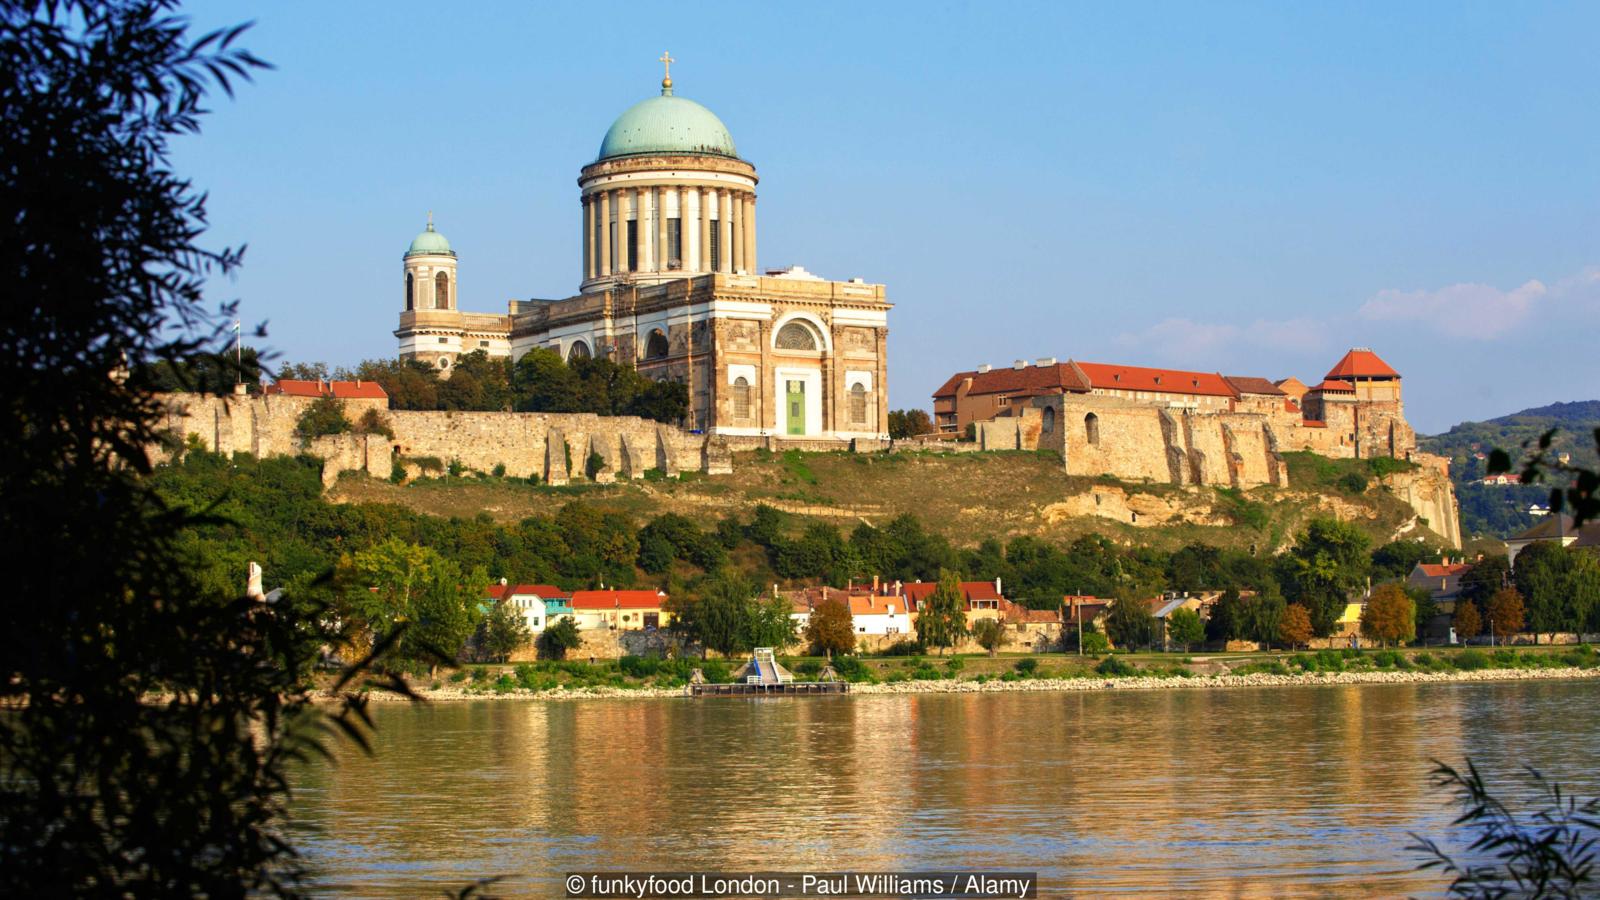 У місті Сентендре, в двадцяти кілометрах від столиці, знаходиться багато музеїв і галерей;  в Вишеграді є гарний середньовічний замок;  а в місті Естергом знаходиться найбільший собор Угорщини